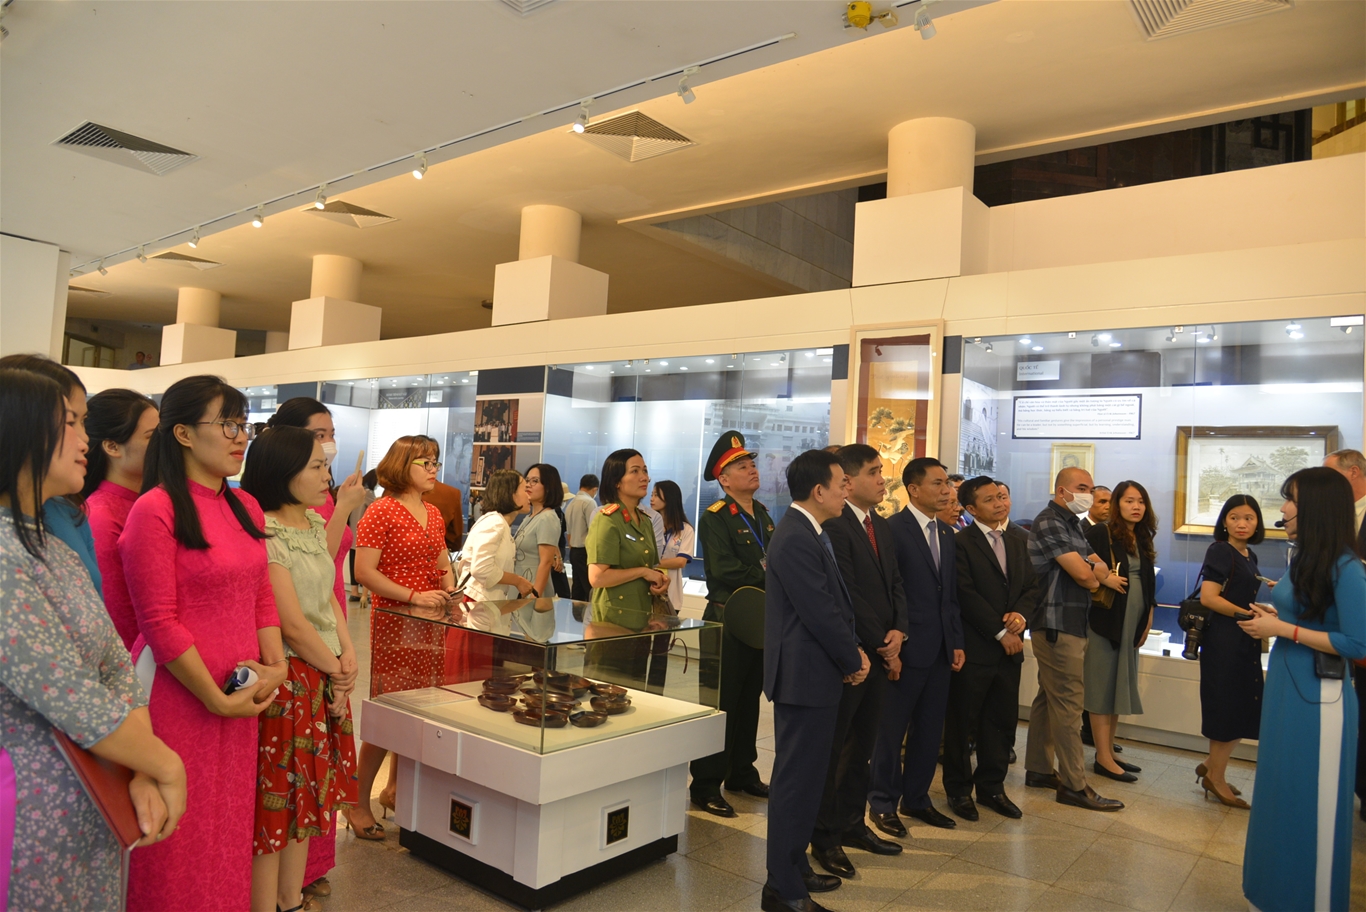 Khai mạc trưng bày chuyên đề “Mỗi kỷ vật một câu chuyện” tại Bảo tàng Hồ Chí Minh - Ảnh 1.